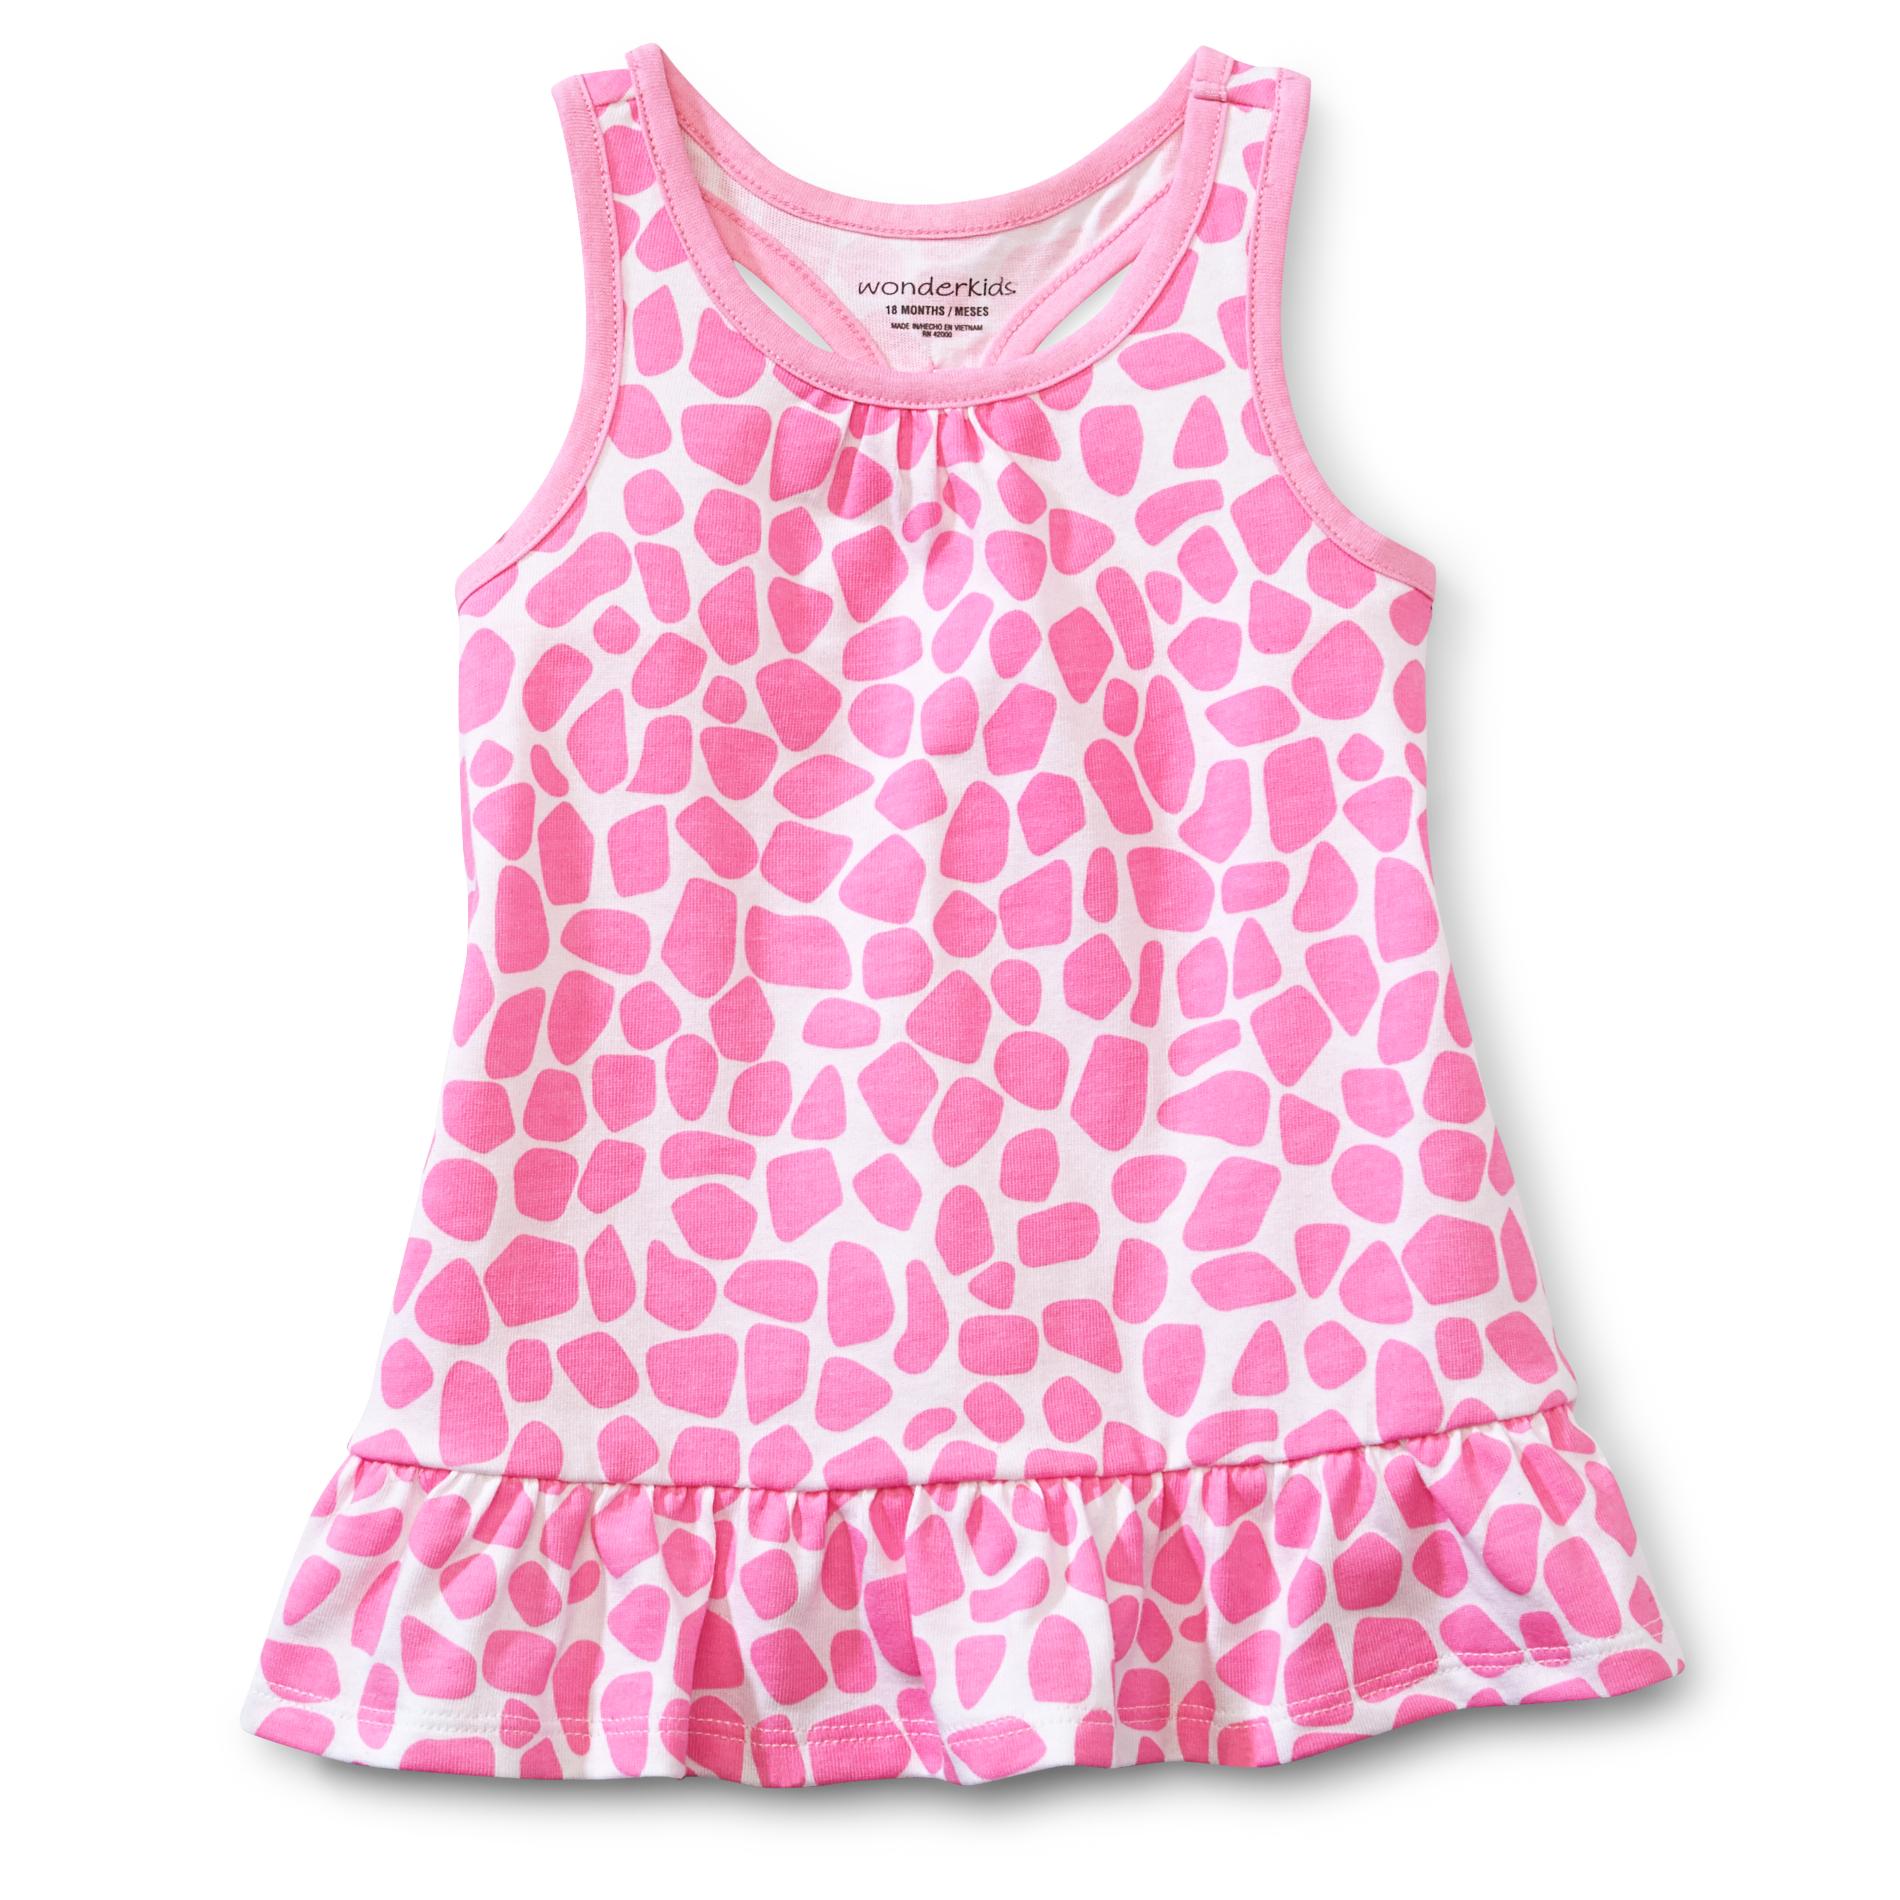 WonderKids Infant & Toddler Girl's Racerback Tunic Top - Giraffe Print